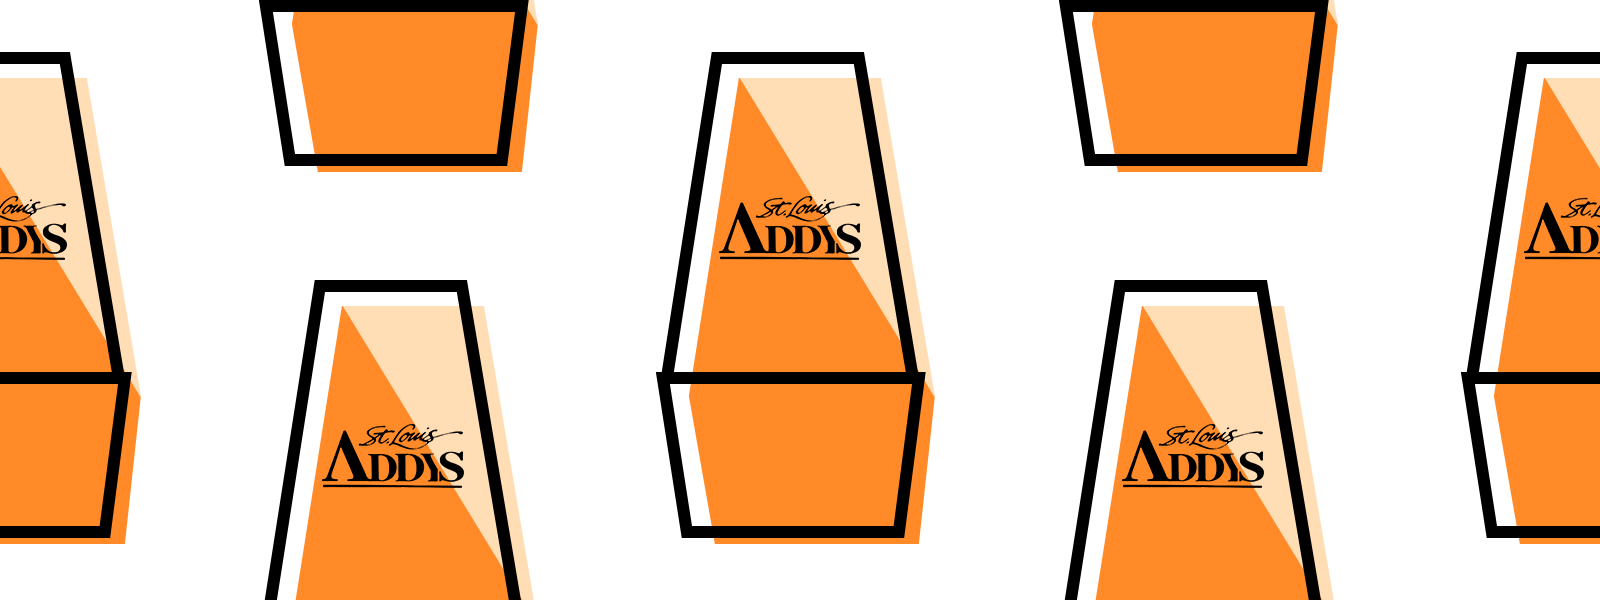 ADDY AwardsPattern